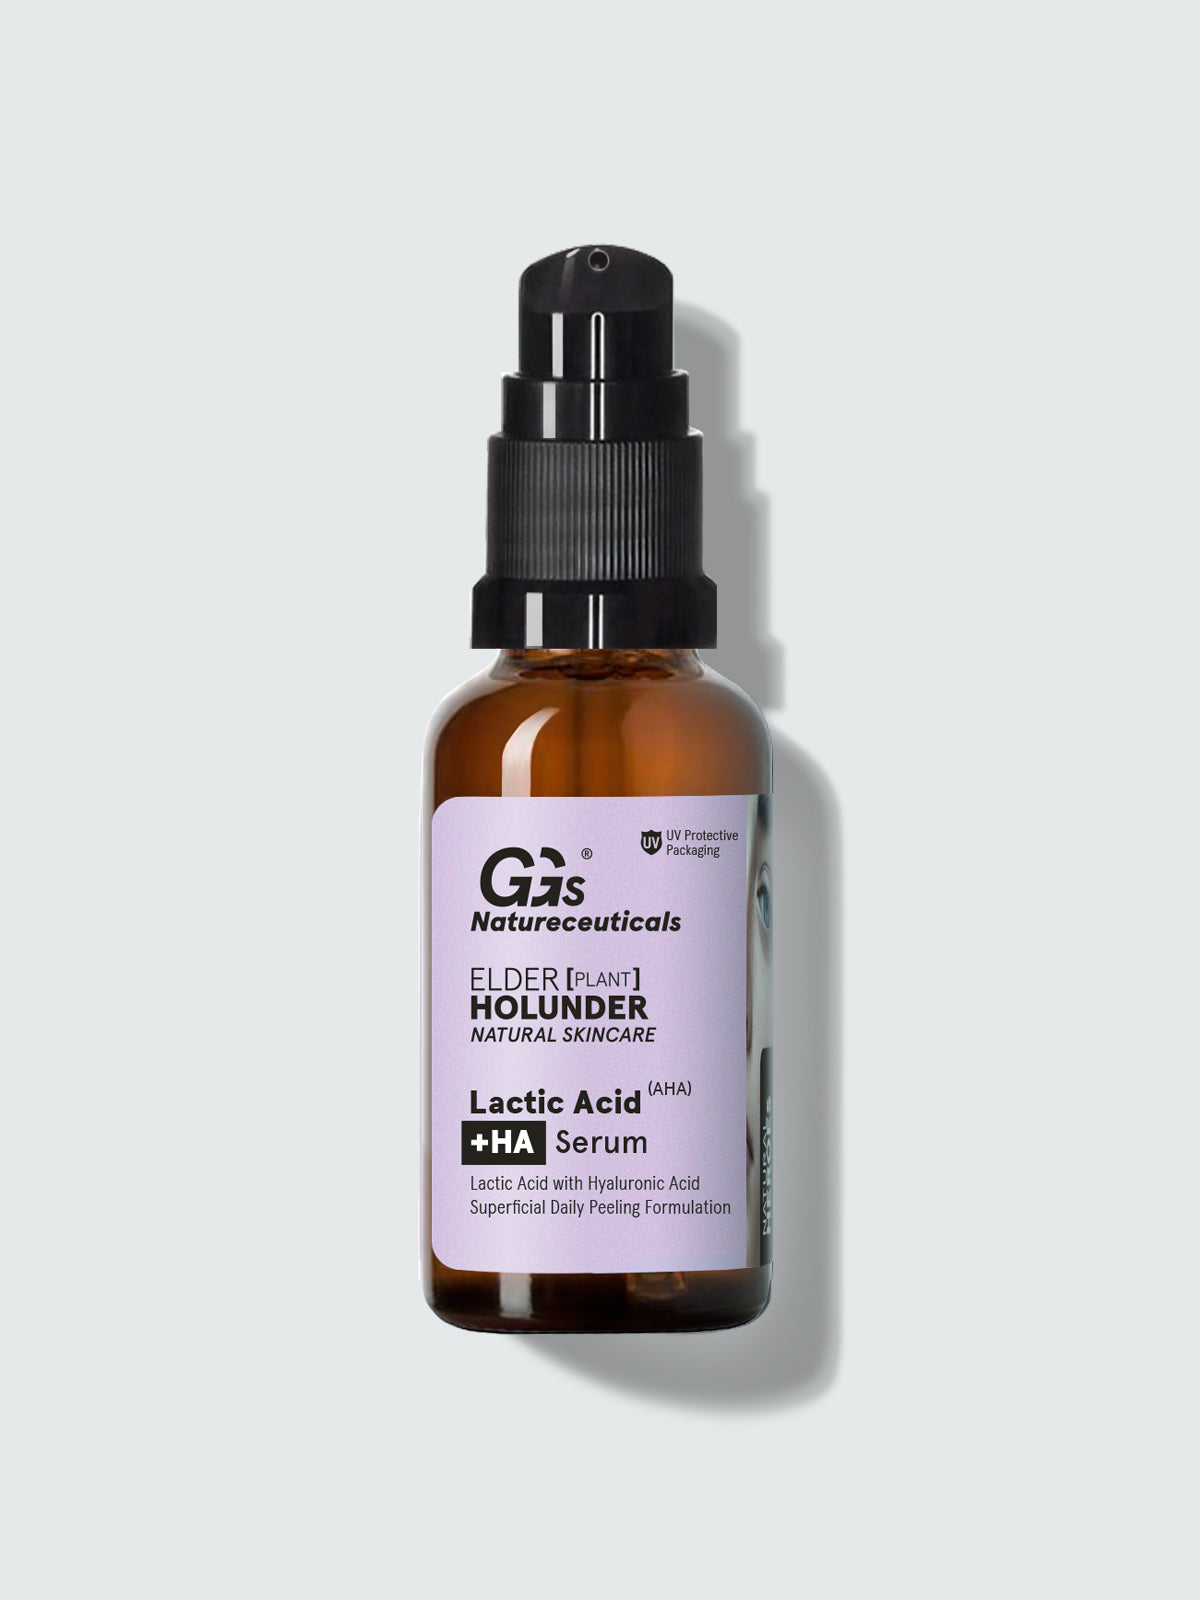 Lactic Acid +HA Serum – Overnight Milchsäure Gesichtsserum | GGs Natureceuticals